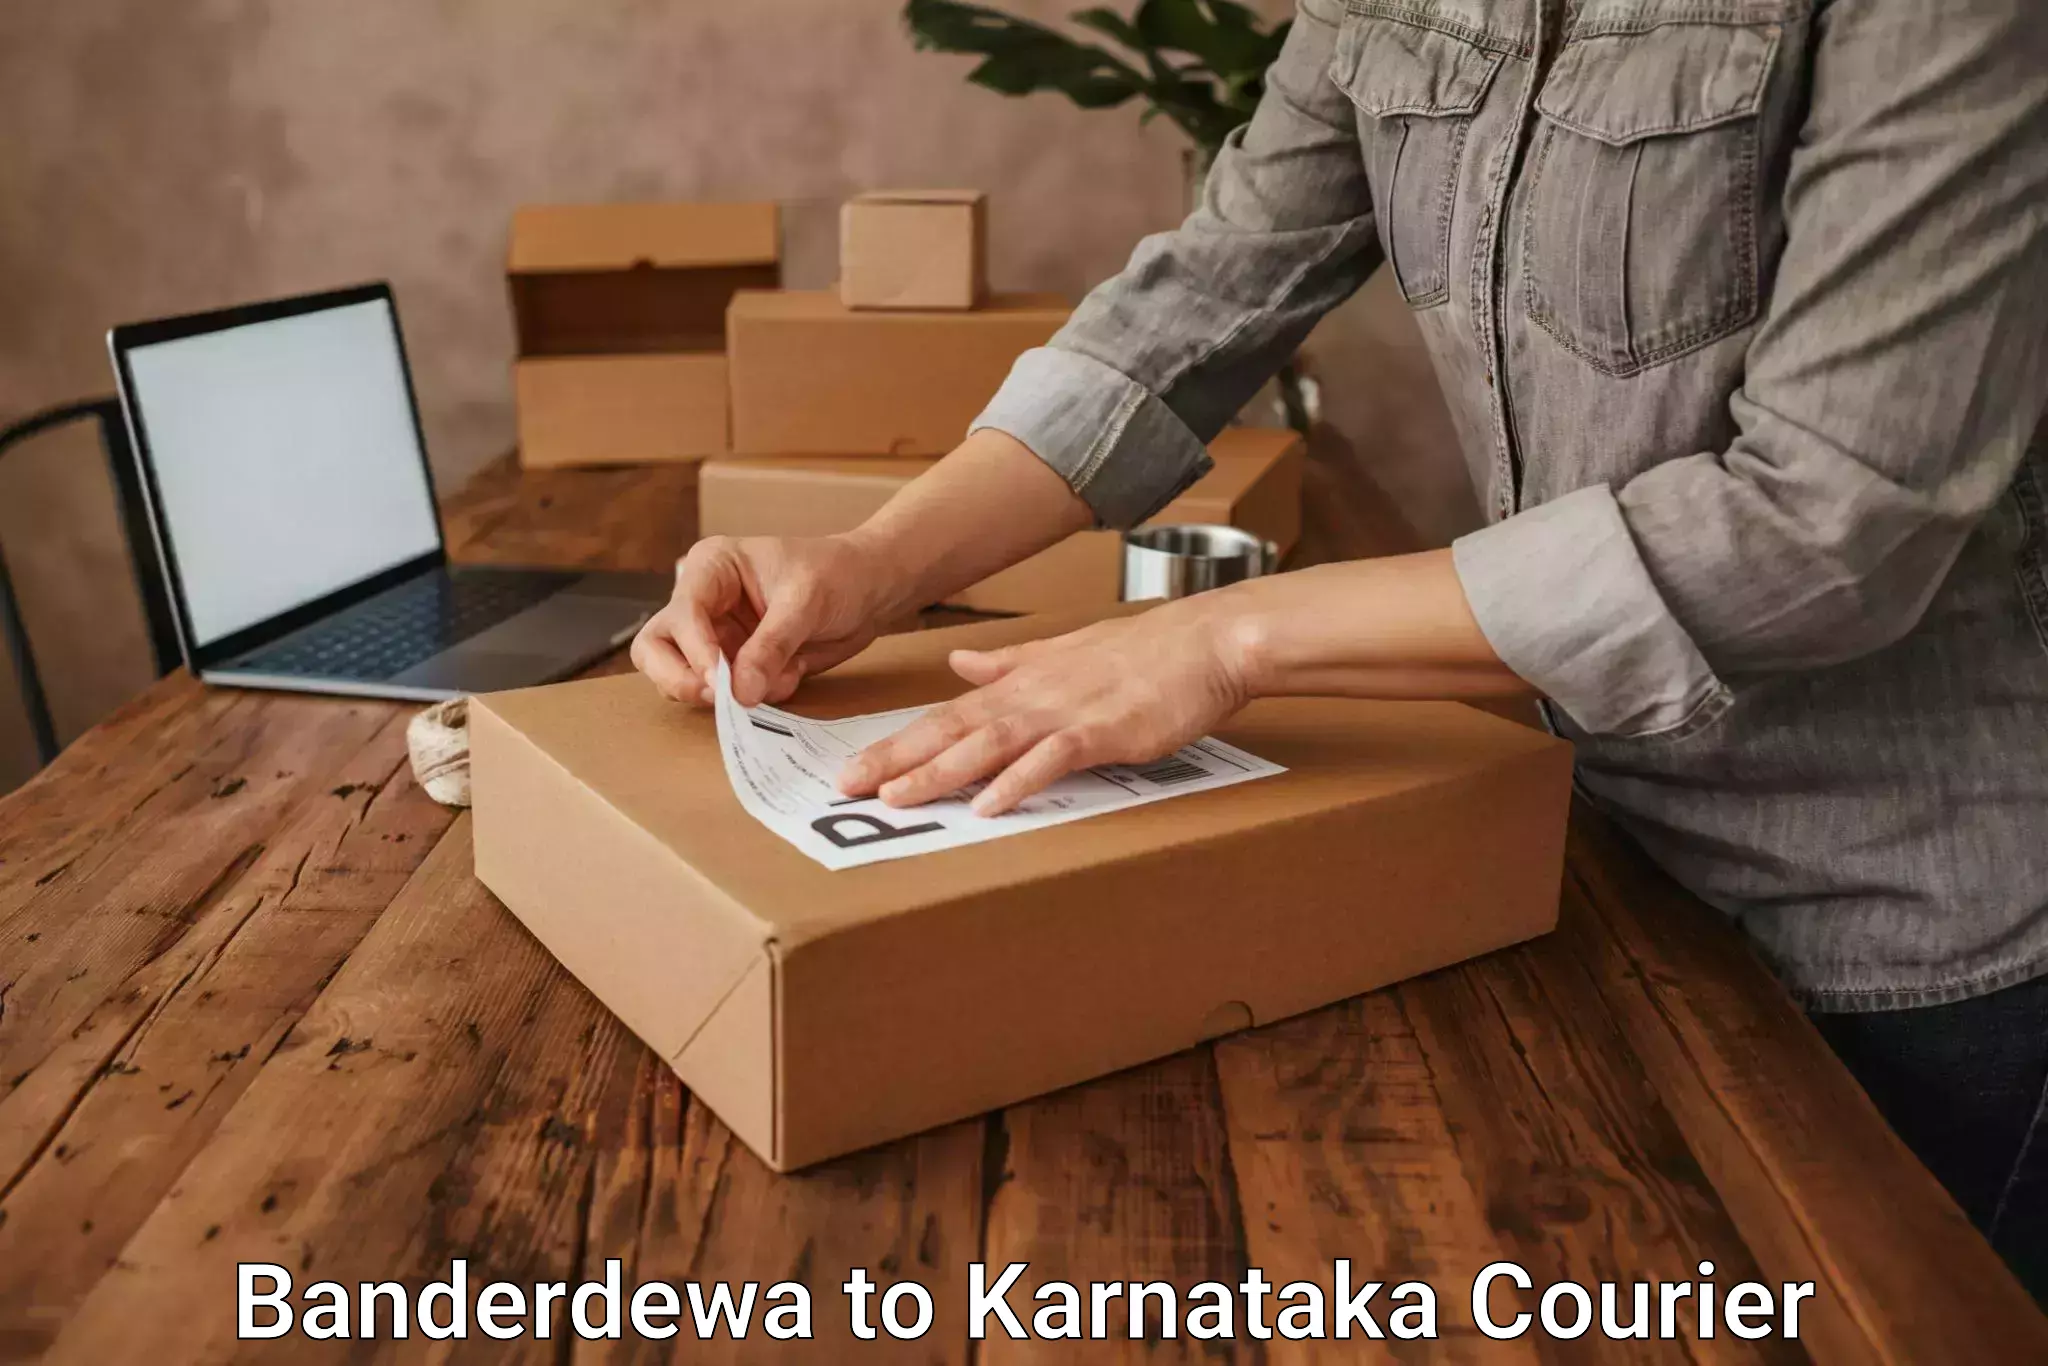 Global courier networks Banderdewa to Chikkanayakanahalli